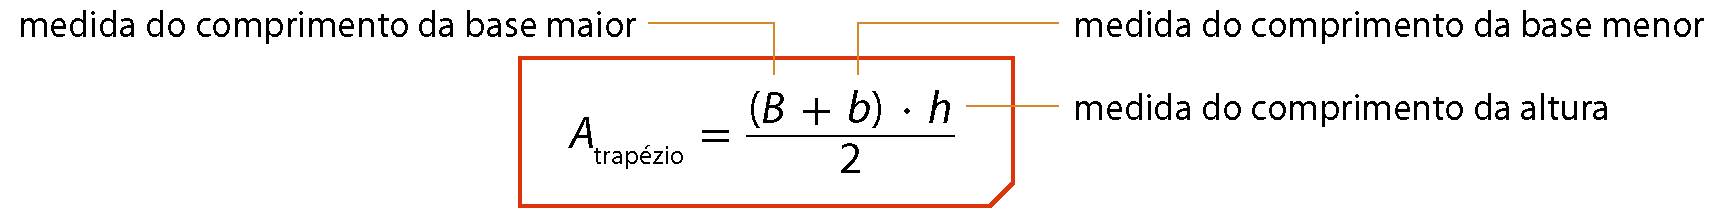 Esquema. Área do trapézio, igual, fração de numerador, abre parênteses, b maiúsculo mais b minúsculo, fecha parênteses, vezes h e denominador 2.
Linha laranja que sai de b maiúsculo indica medida do comprimento da base maior, linha laranja que sai de b minúsculo indica medida do comprimento da base menor e linha laranja que sai de h indica medida do comprimento da altura.